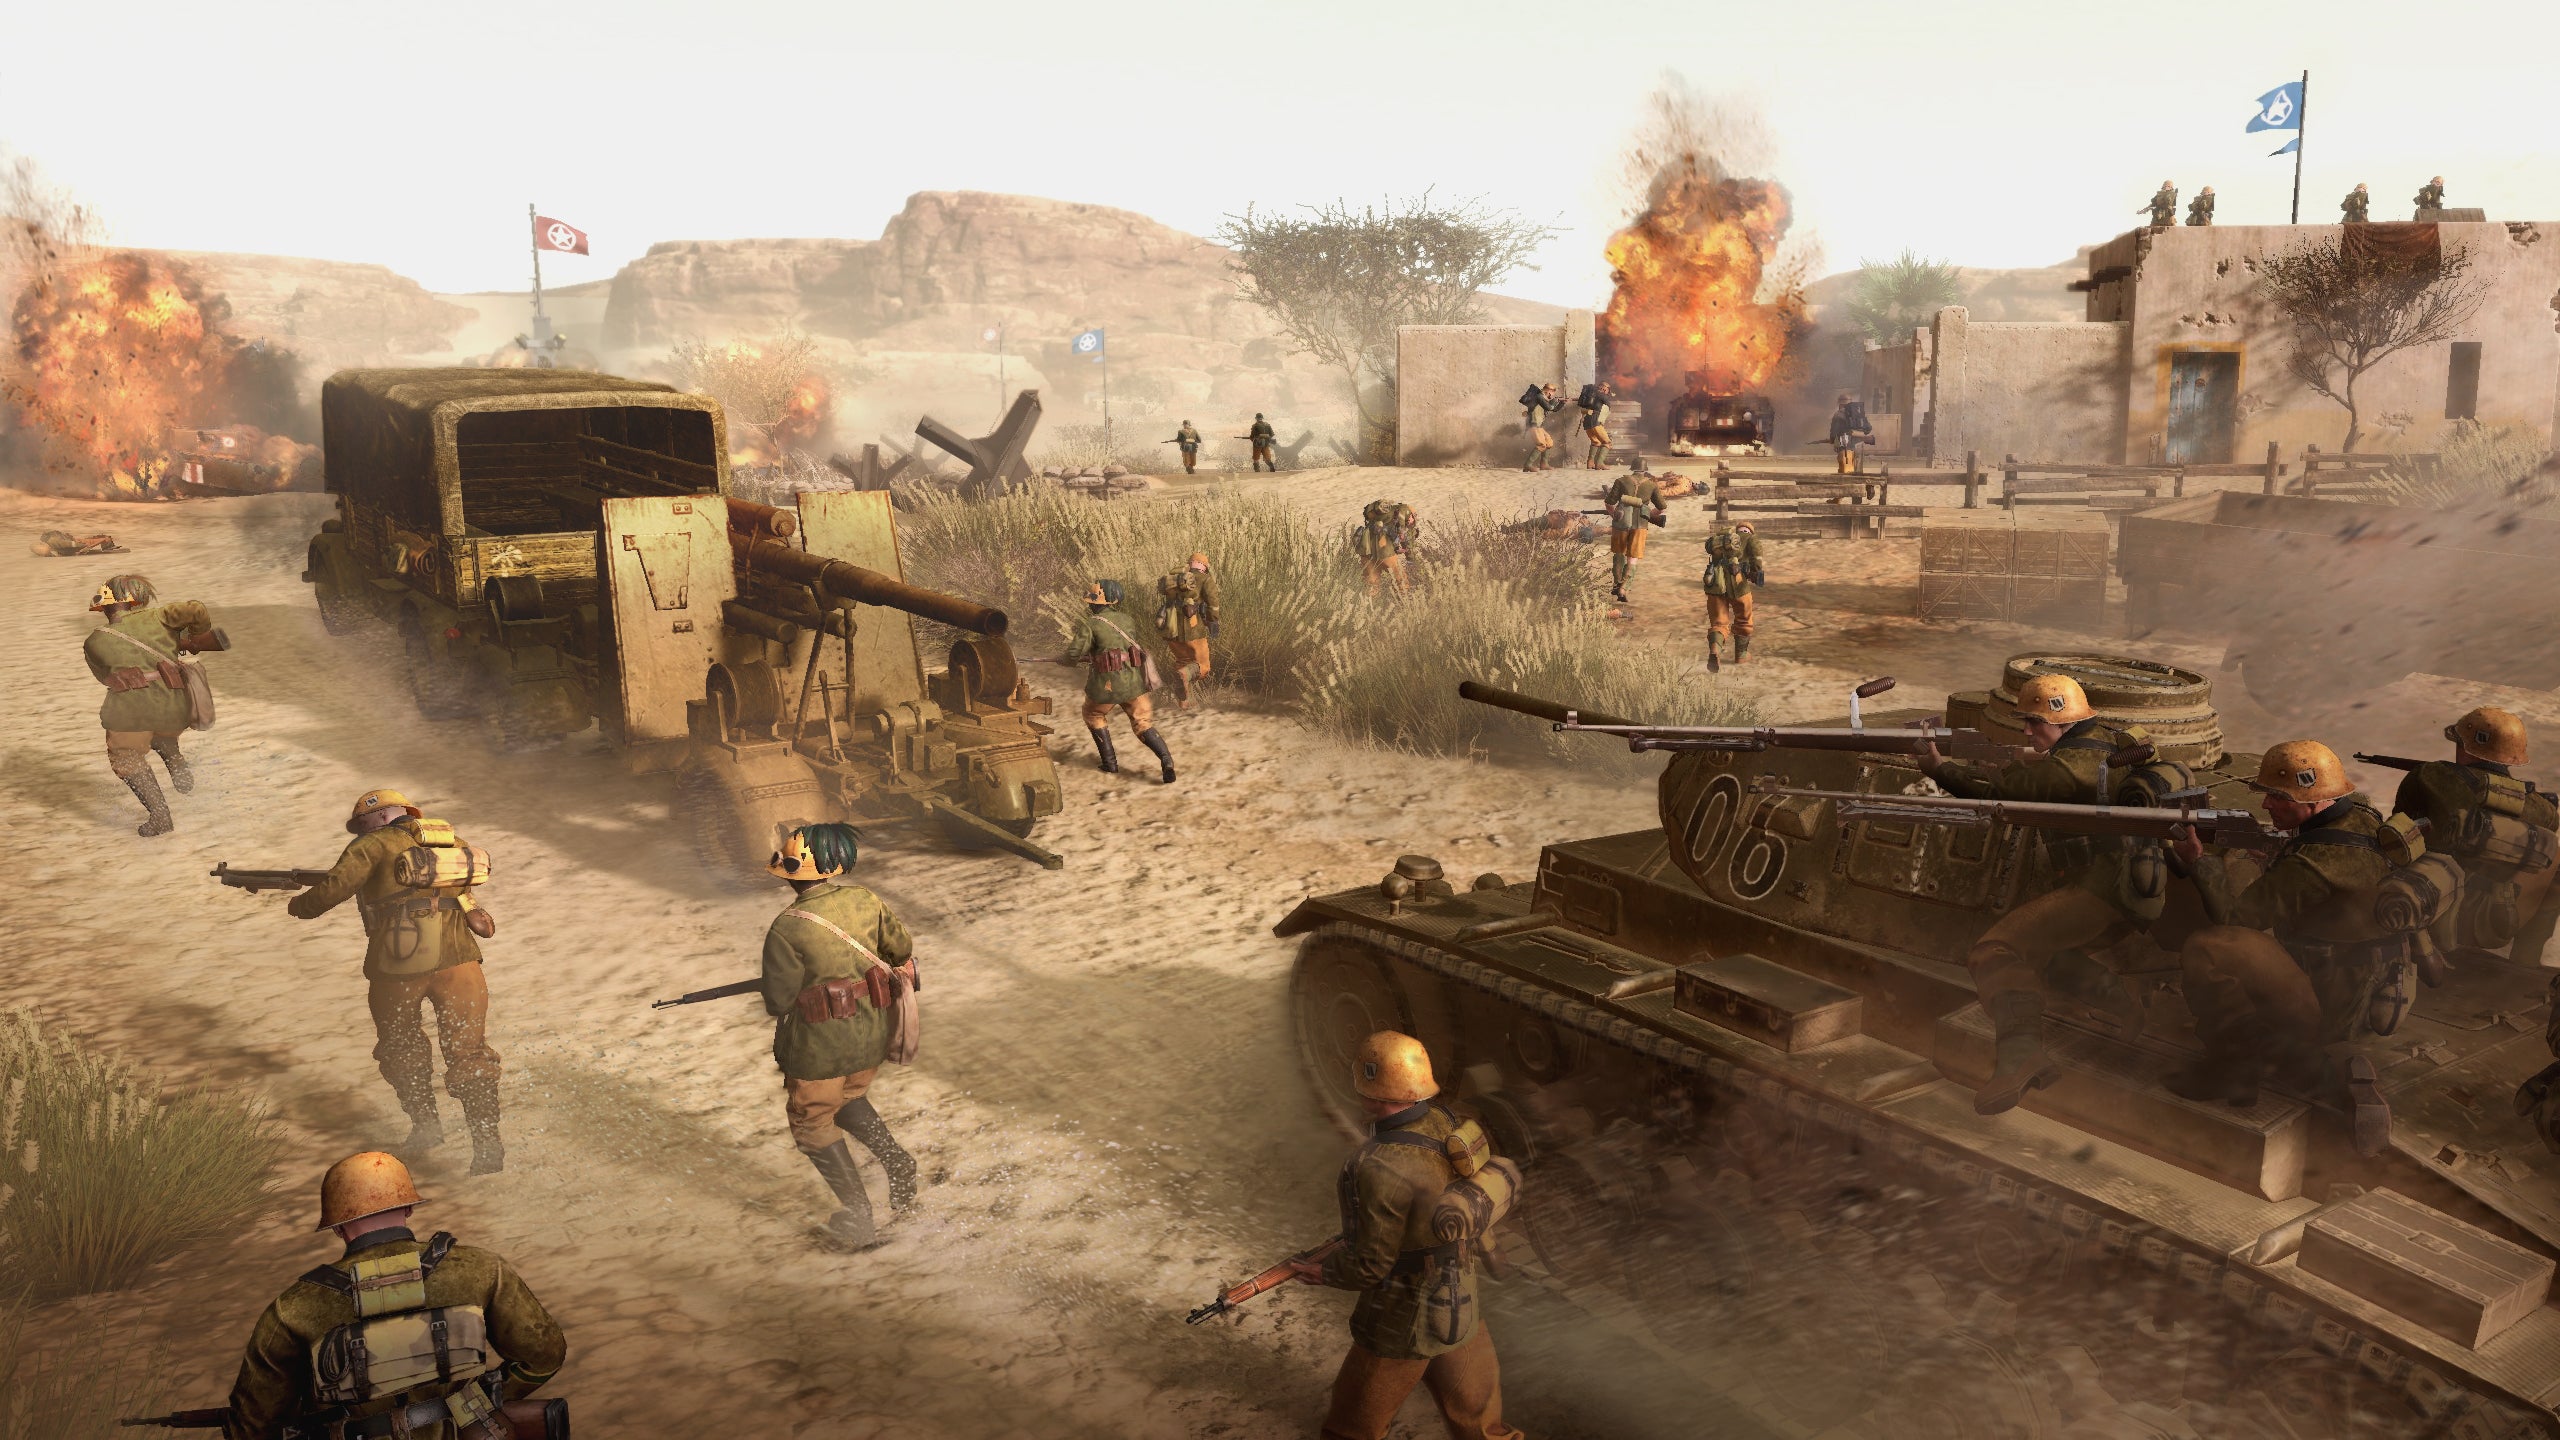 Pratinjau Company of Heroes 3 - bidikan aksi infanteri yang mengendarai tank di Tunis